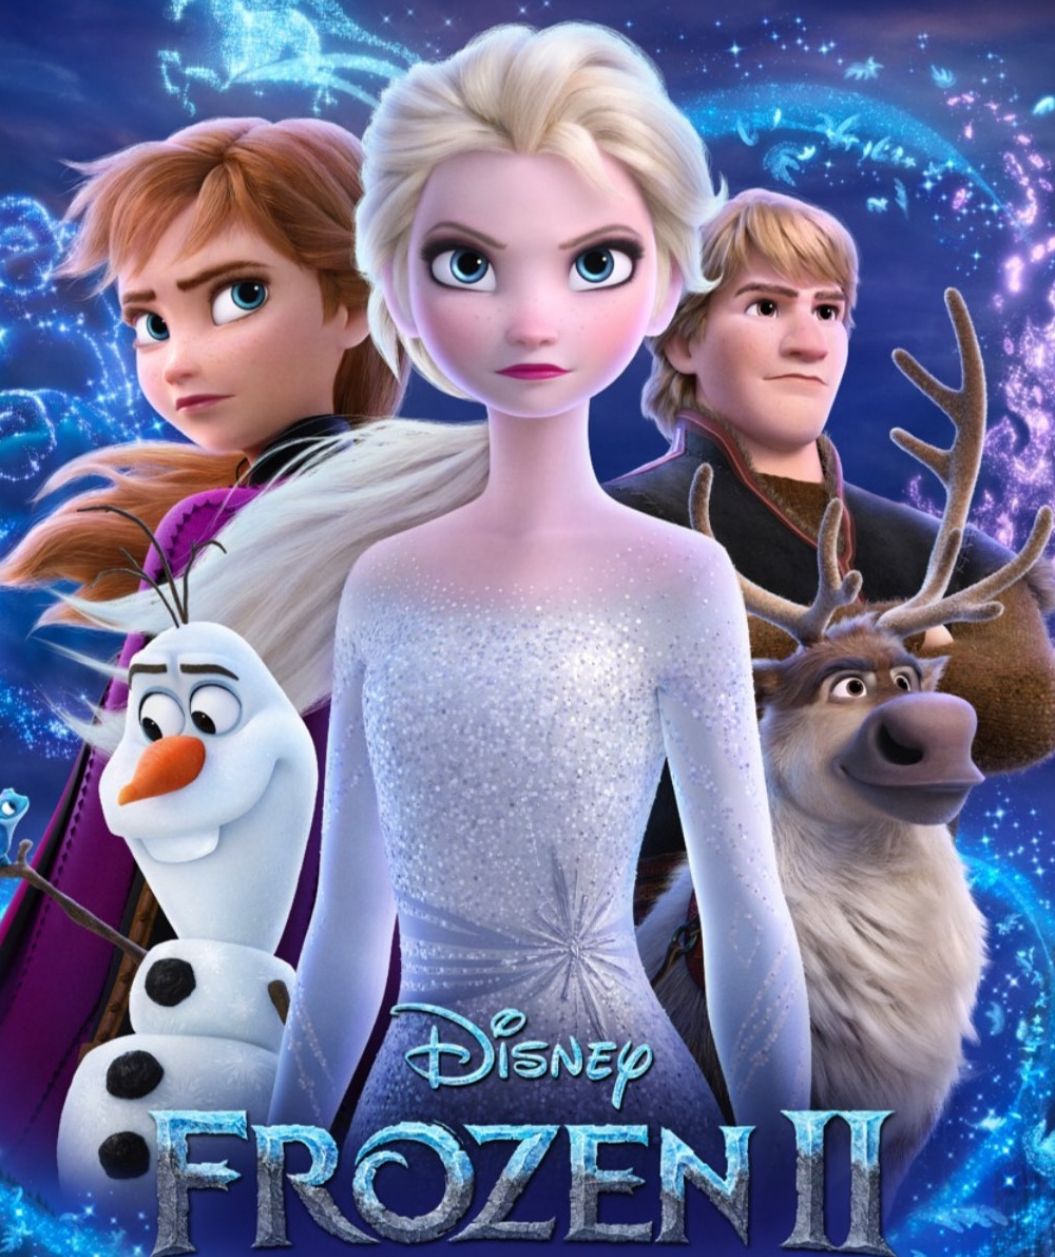 Poster Frozen II.